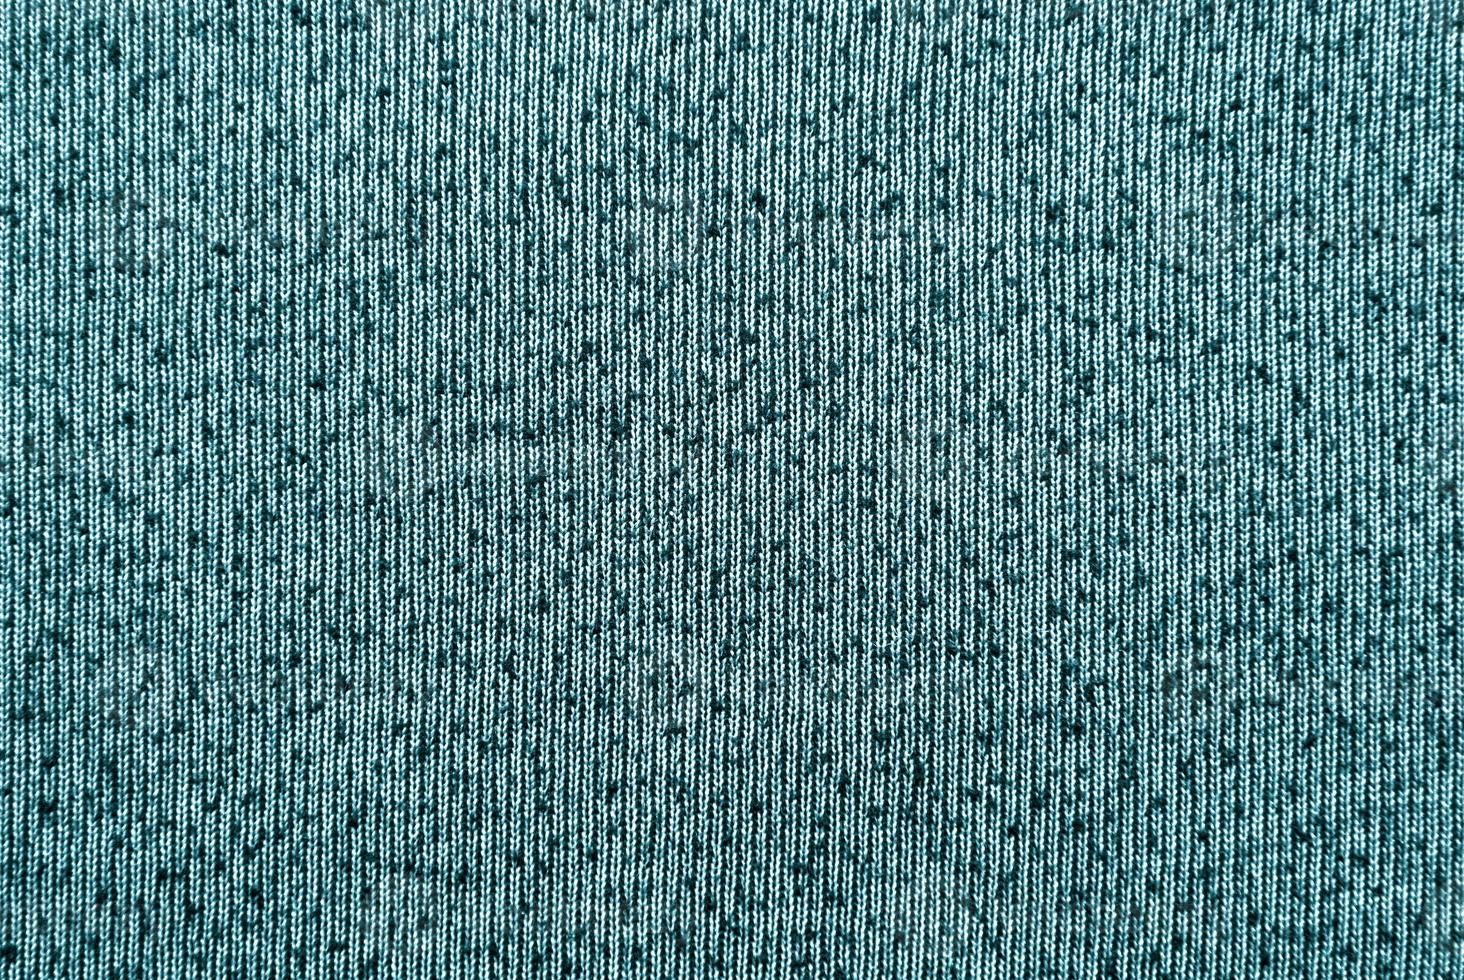 texture matérielle turquoise photo